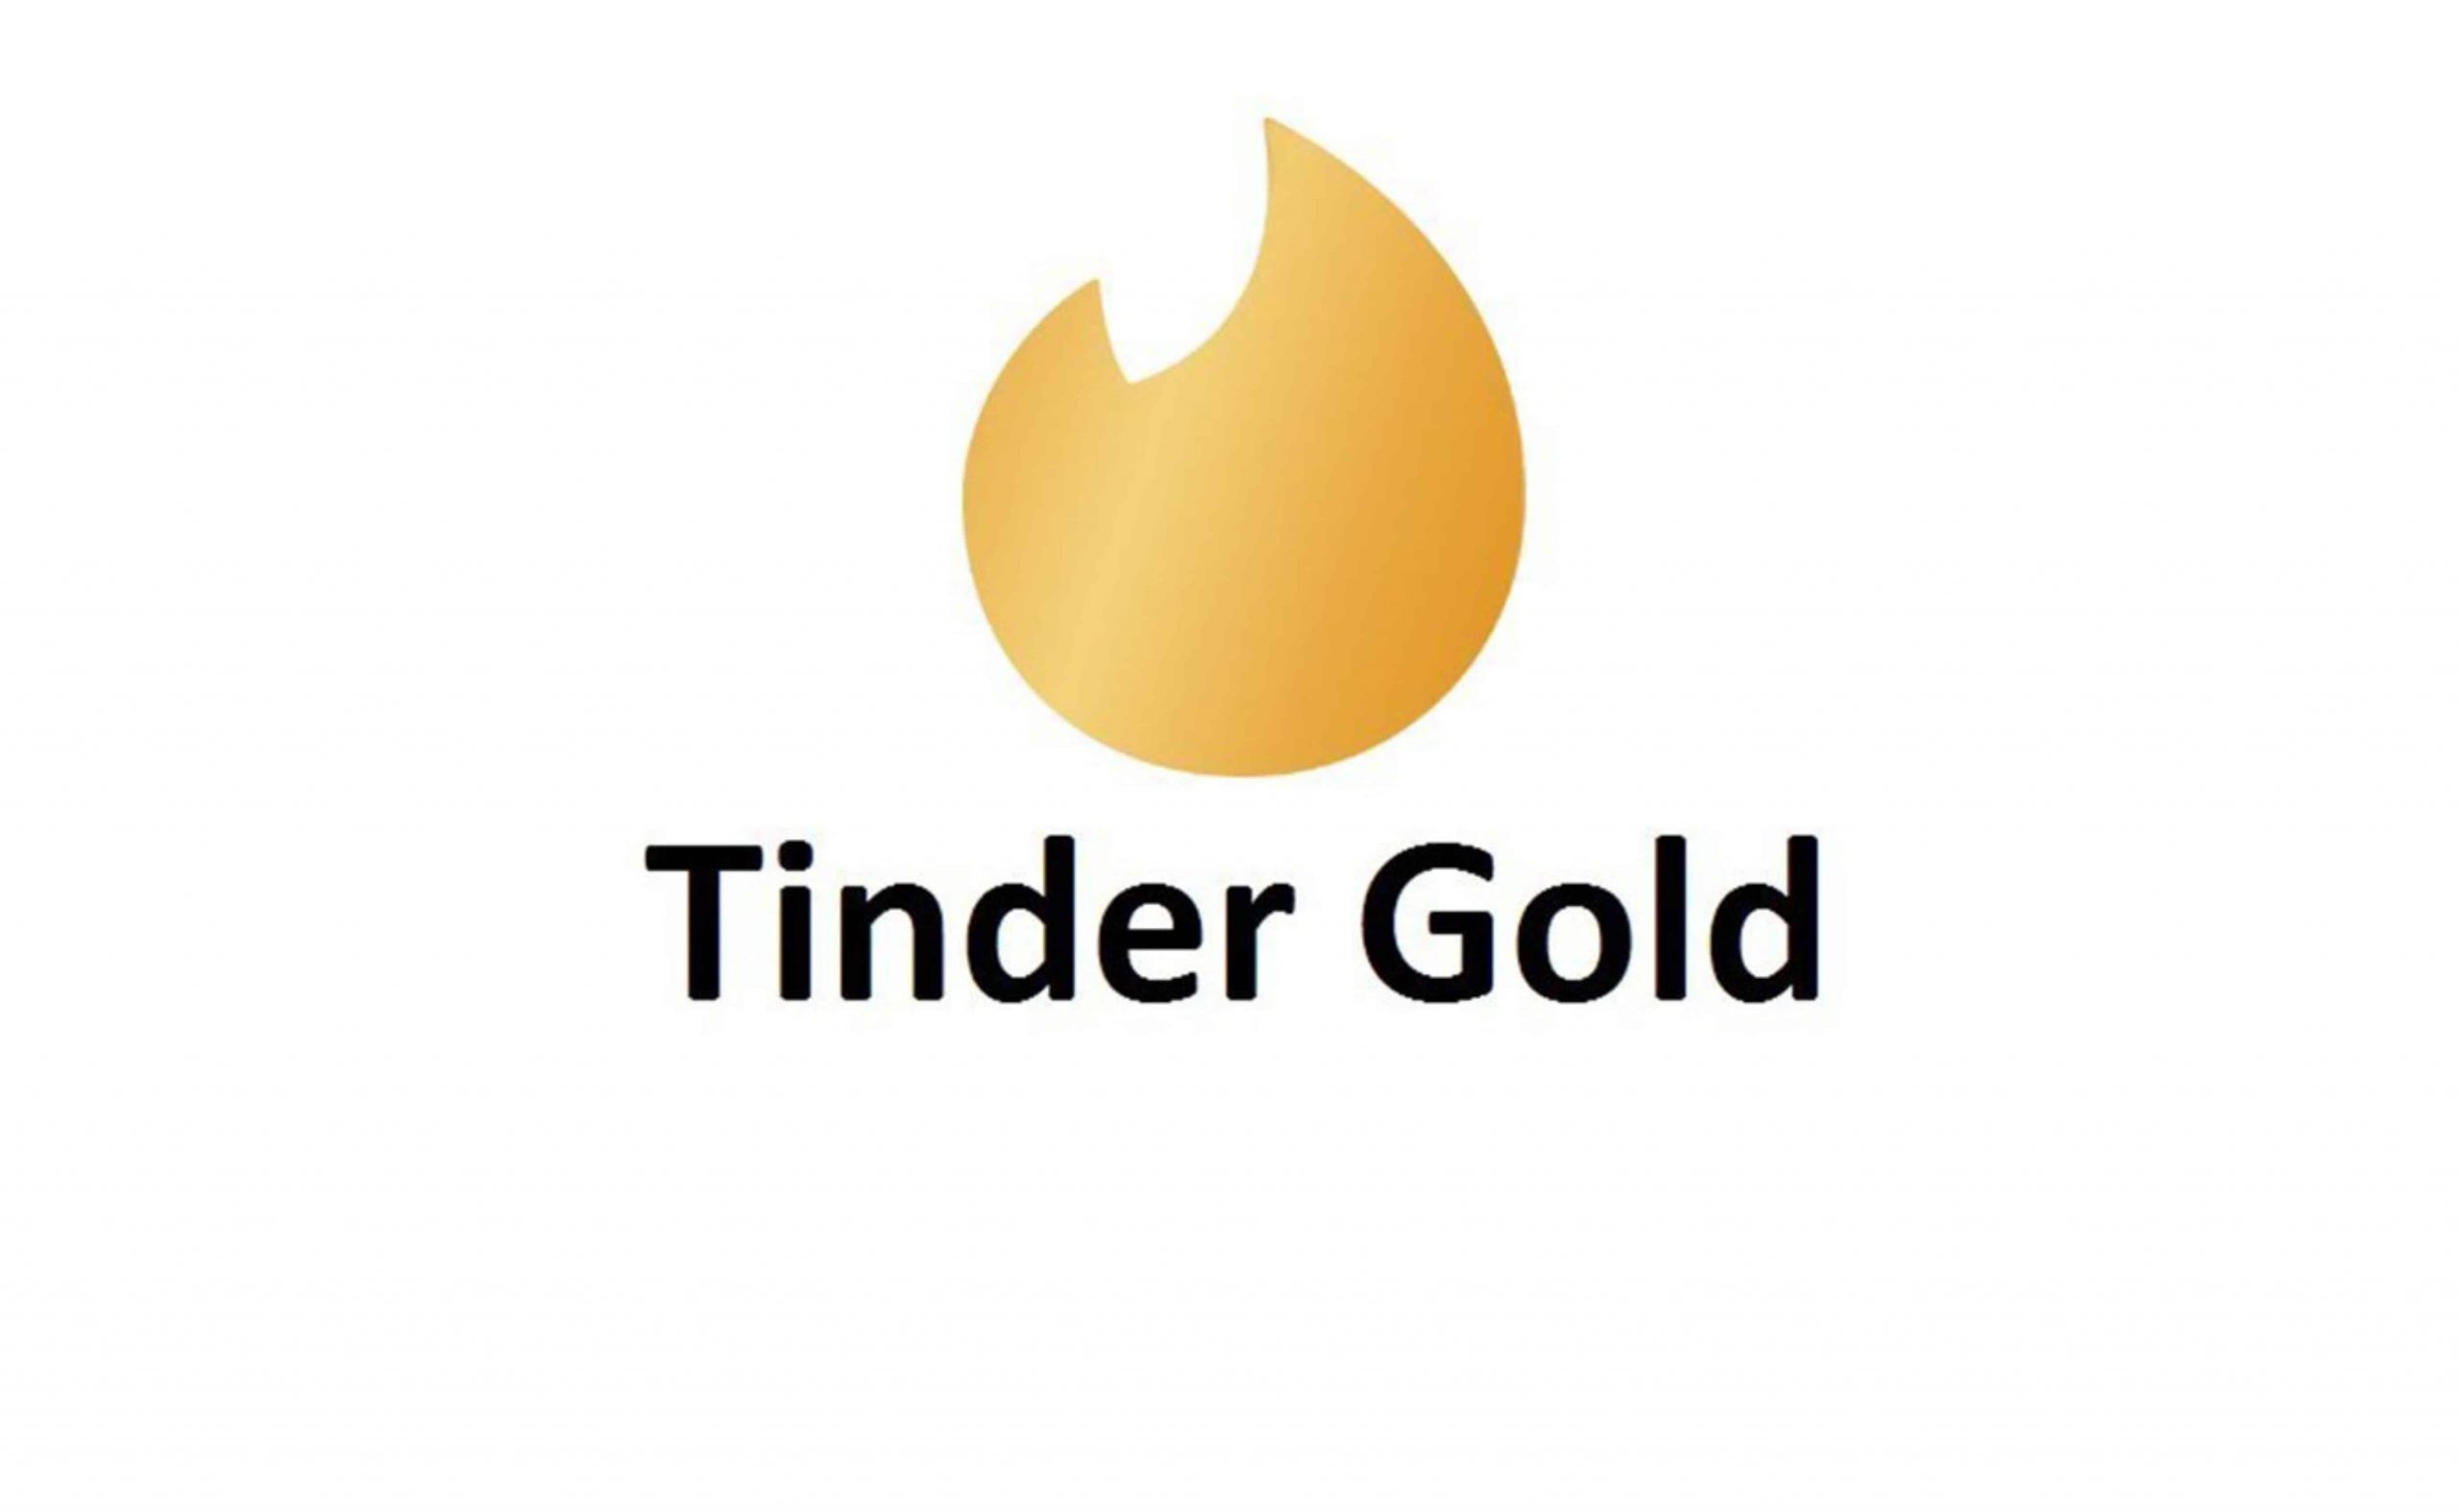 🌏После покупки вы получите услугу активации подписки Tinder Gold на 6 меся...